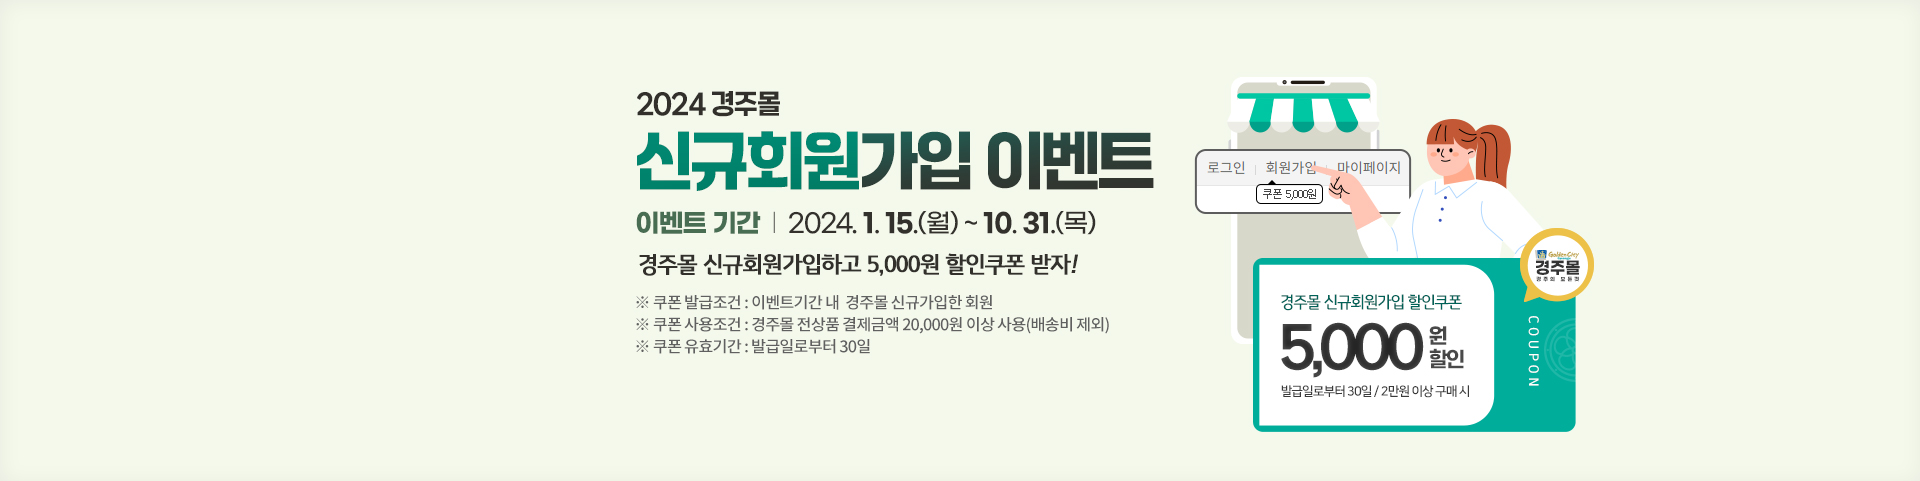 경주몰 2024년 신규회원가입 이벤트_배너 수정